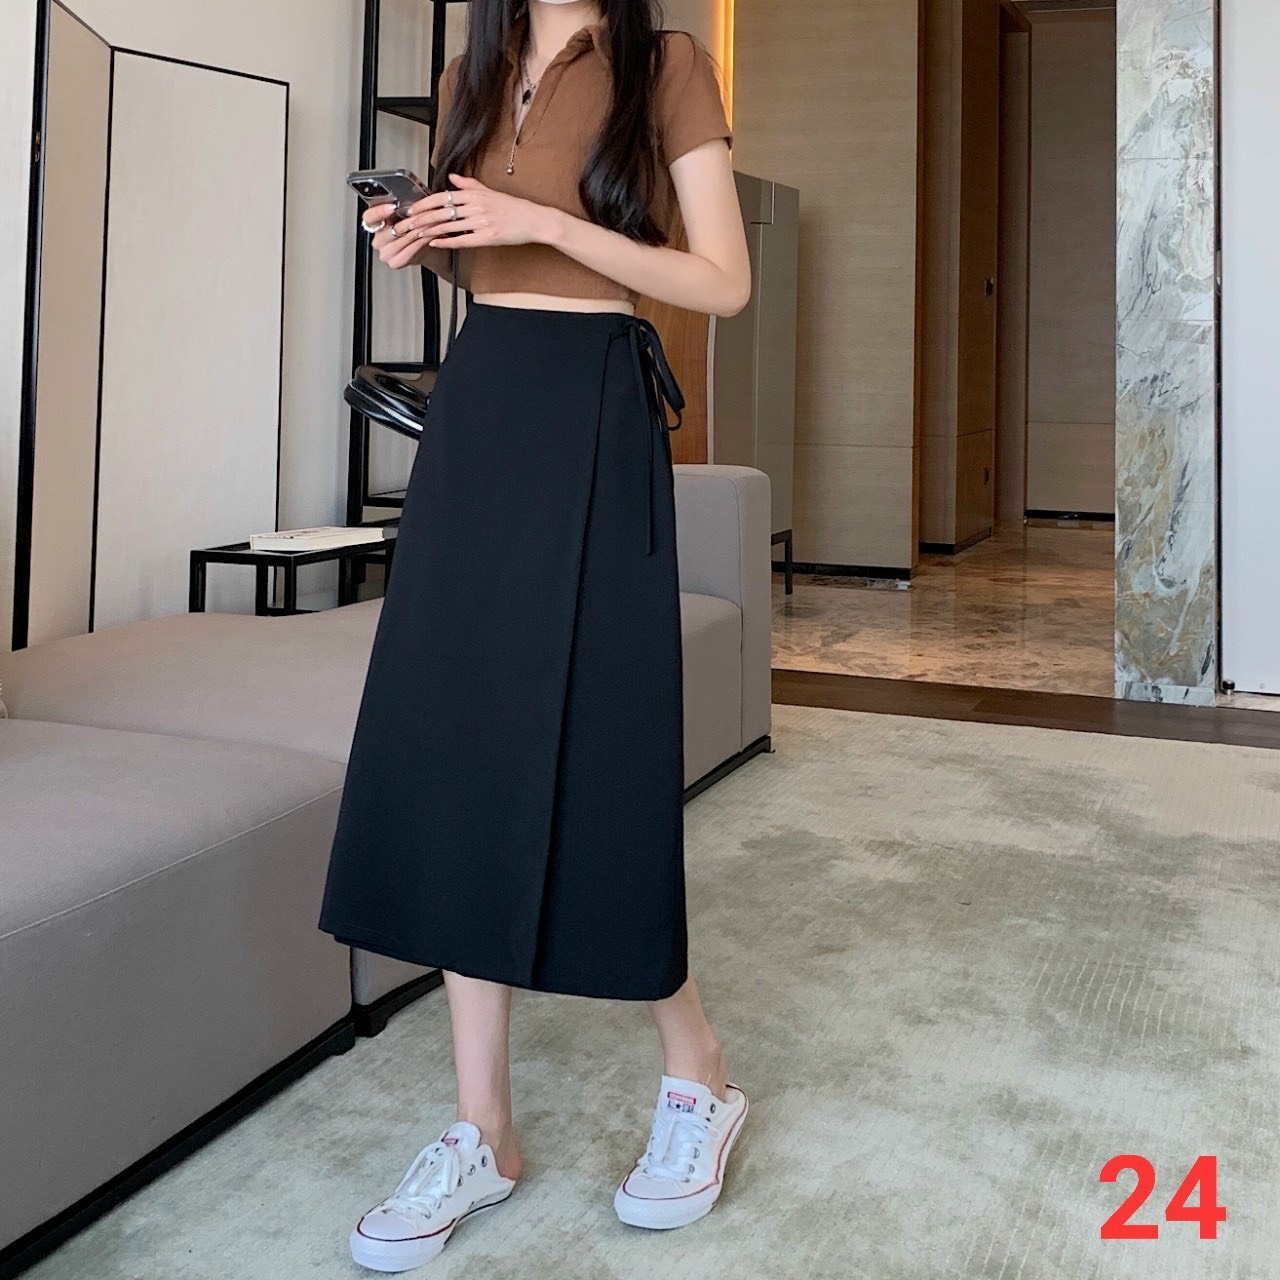 Bí kíp giúp con gái mix đồ với chân váy dài chuẩn ulzzang Hàn Quốc  Thời  trang  Việt Giải Trí